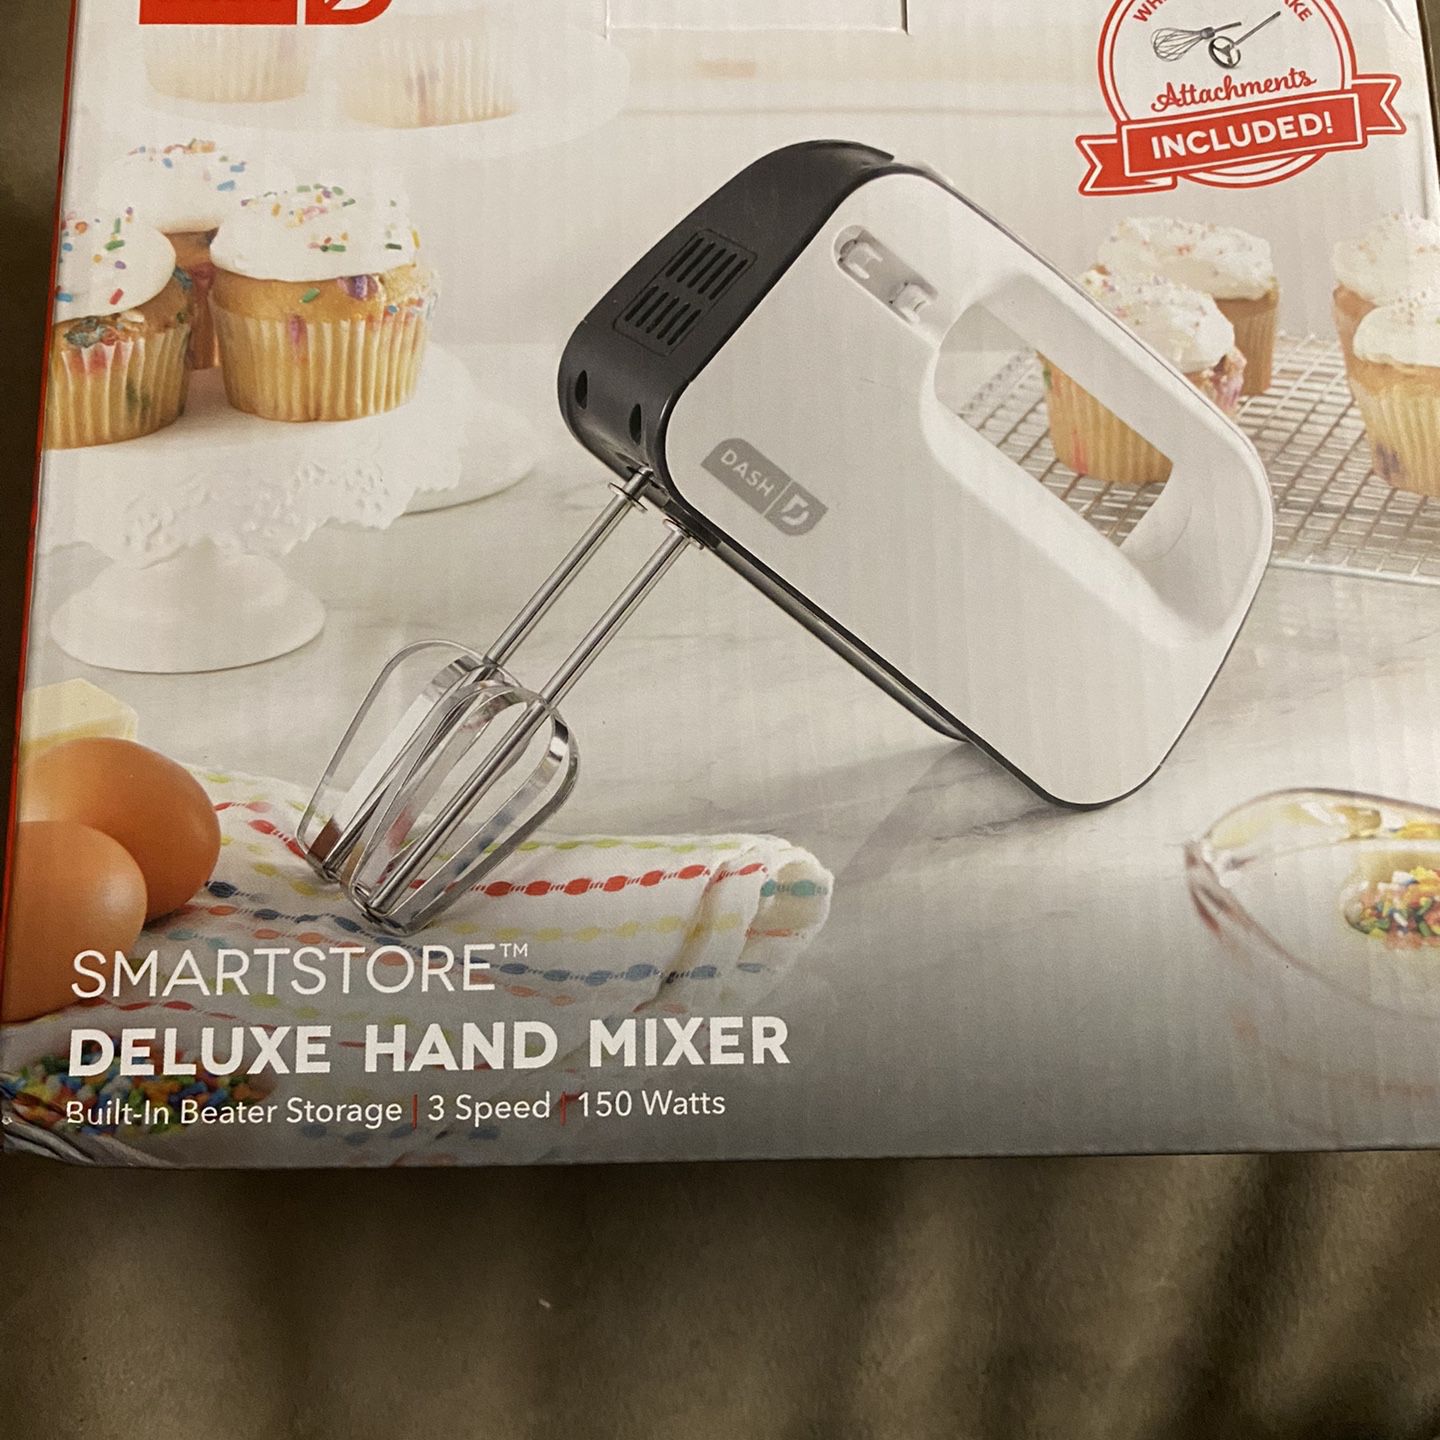 Dash Smartstore Hand Mixer